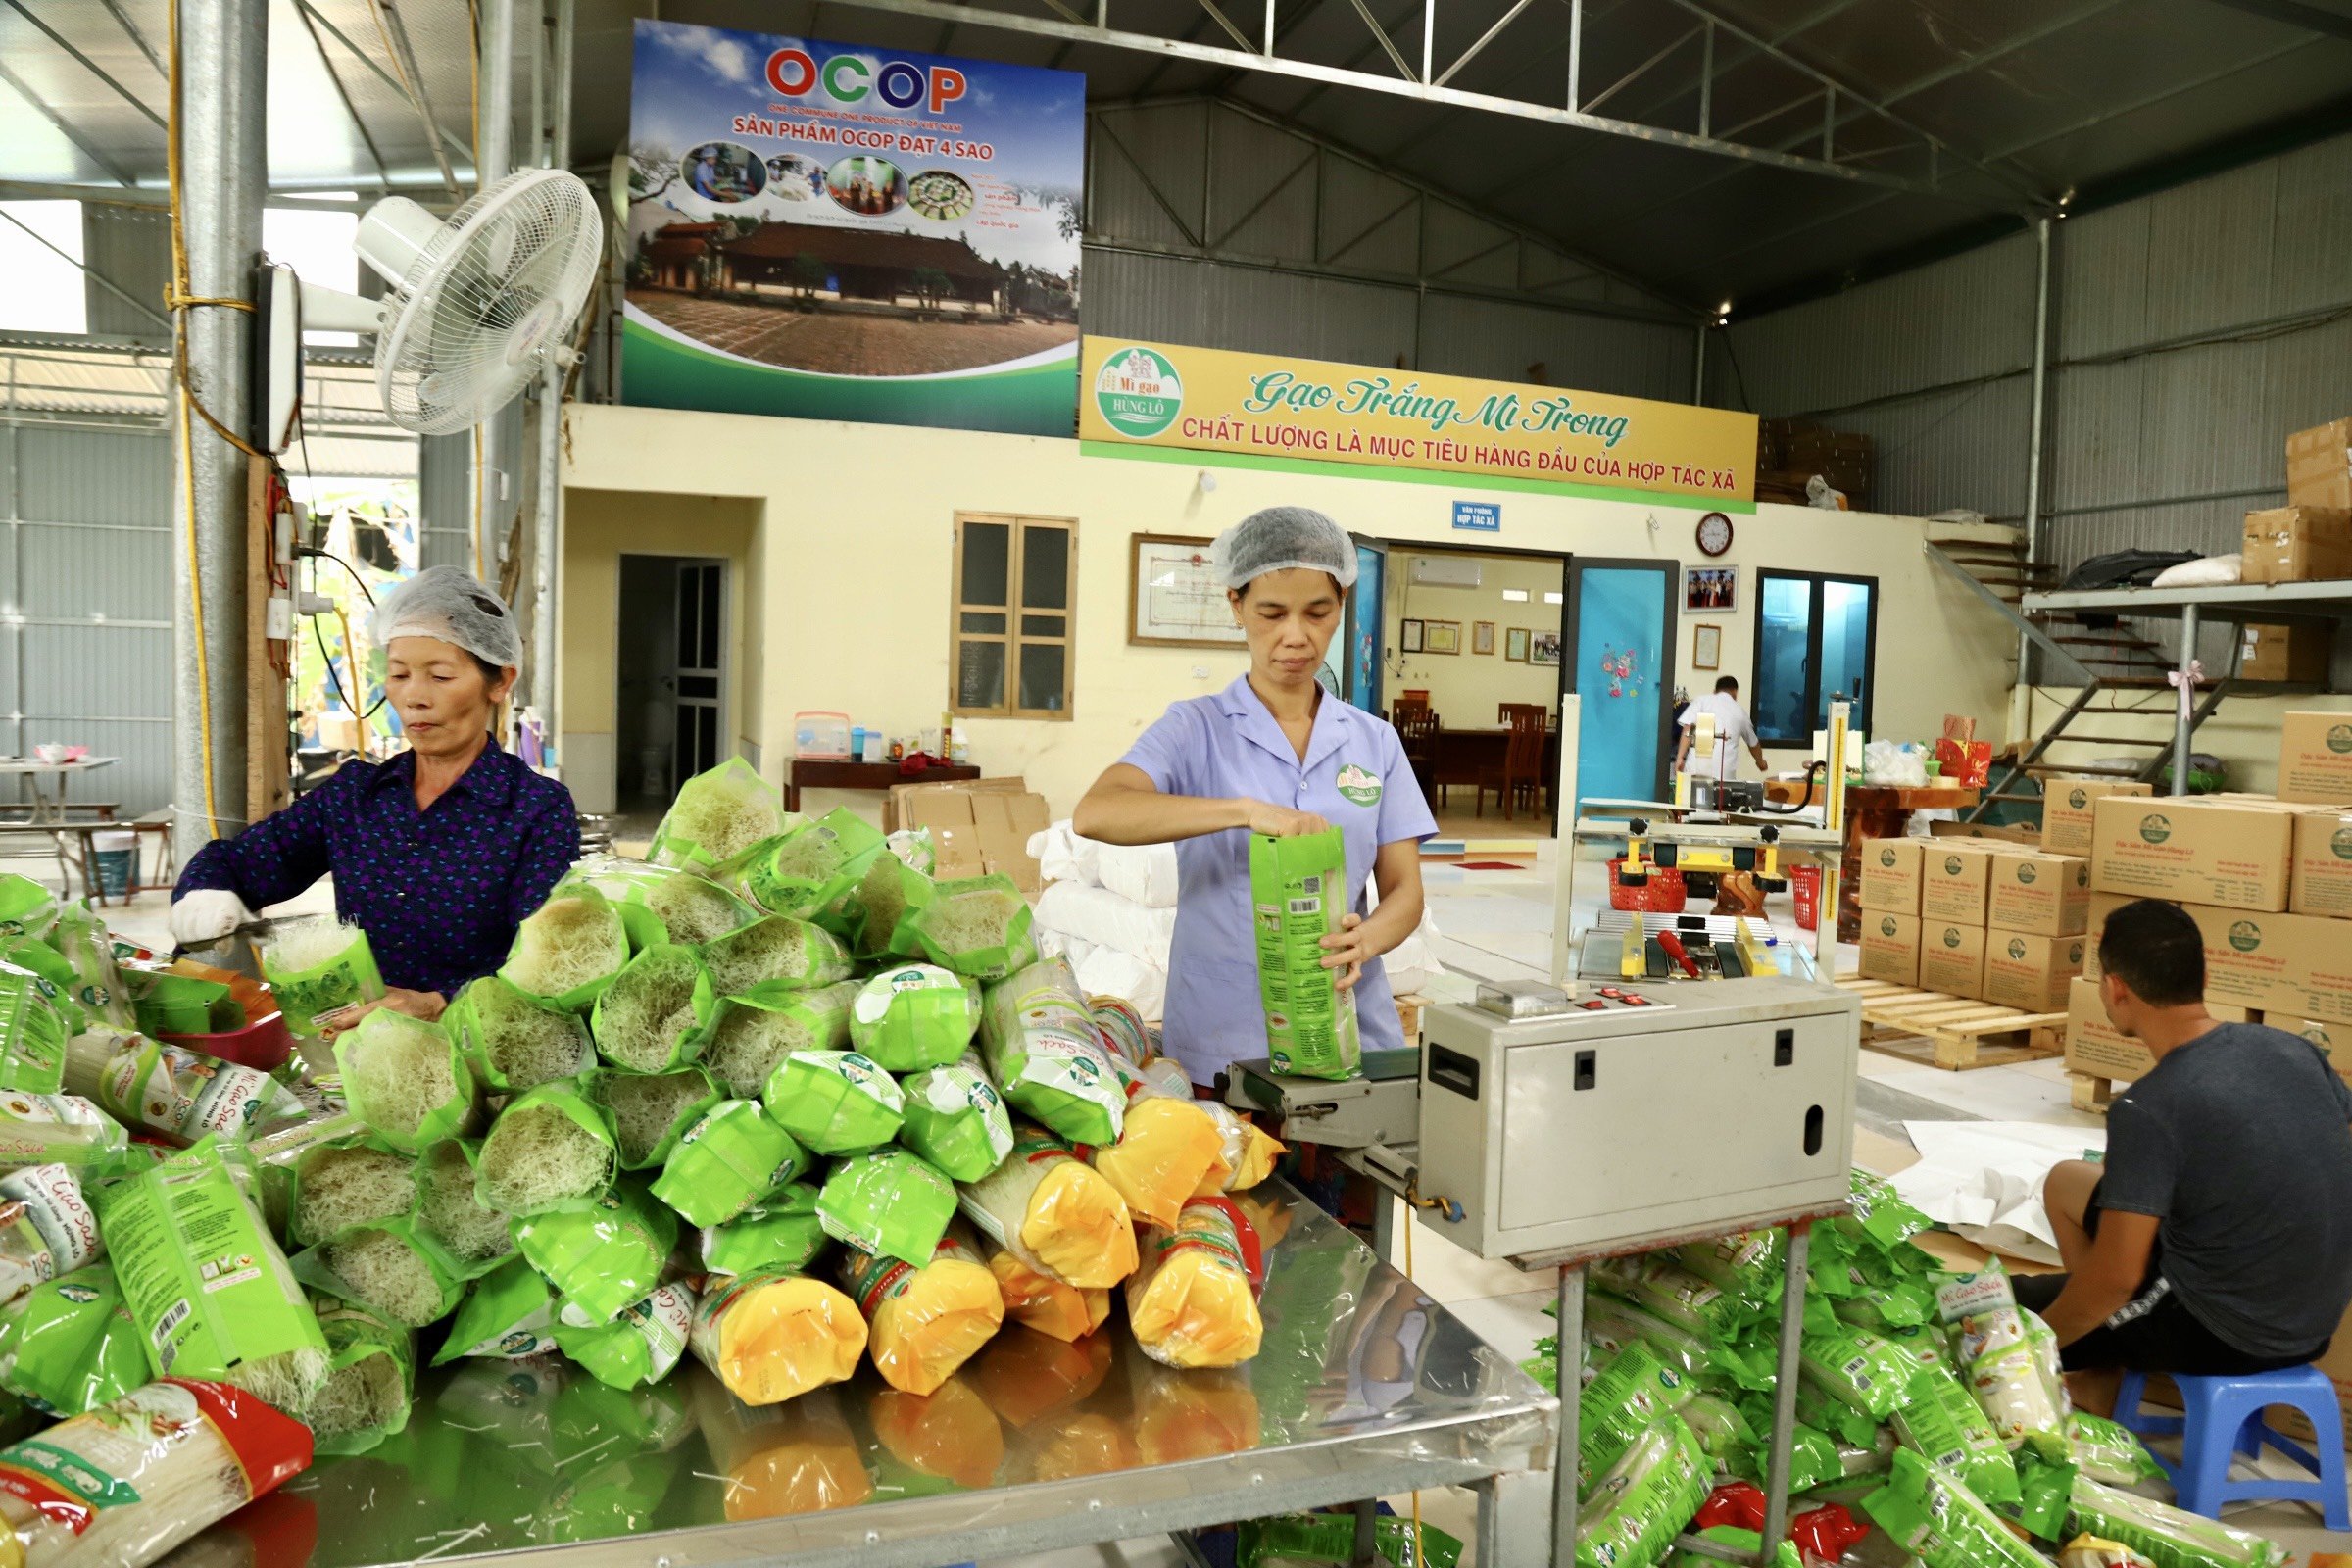 127 sản phẩm, đặc sản của 150 hợp tác xã sản xuất ở Phú Thọ được chứng nhận OCOP- Ảnh 1.